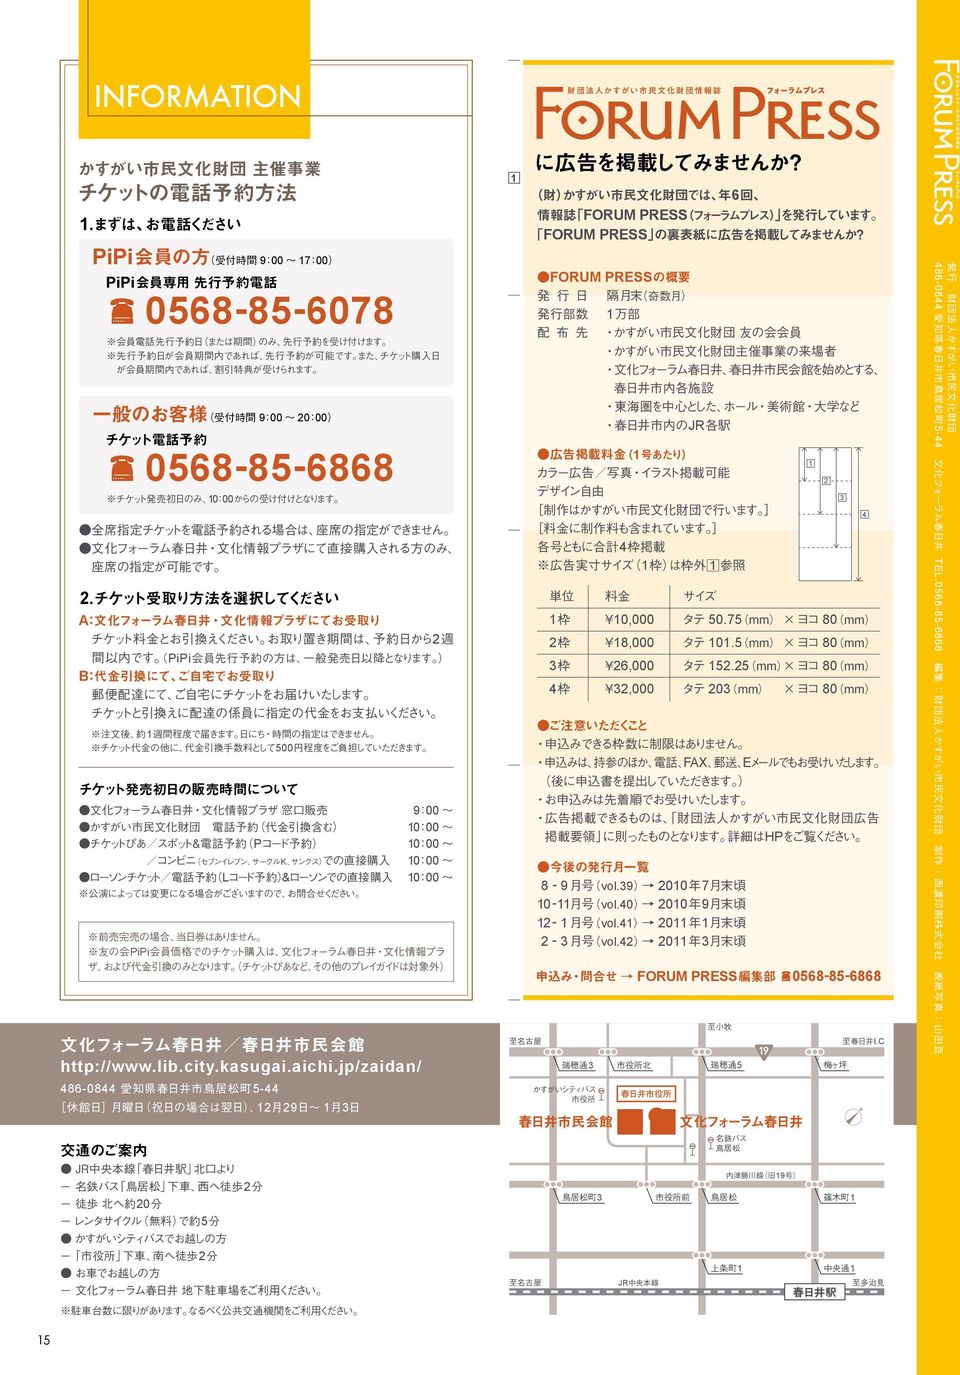 jp/zaidan/ 486-0844 5-44 1229 13 2 20 5 2 K L& 900 1000 1000 1000 1000 PiPi FORUM PRESS 1 JR 1 4 1 1 1 10,000 50.